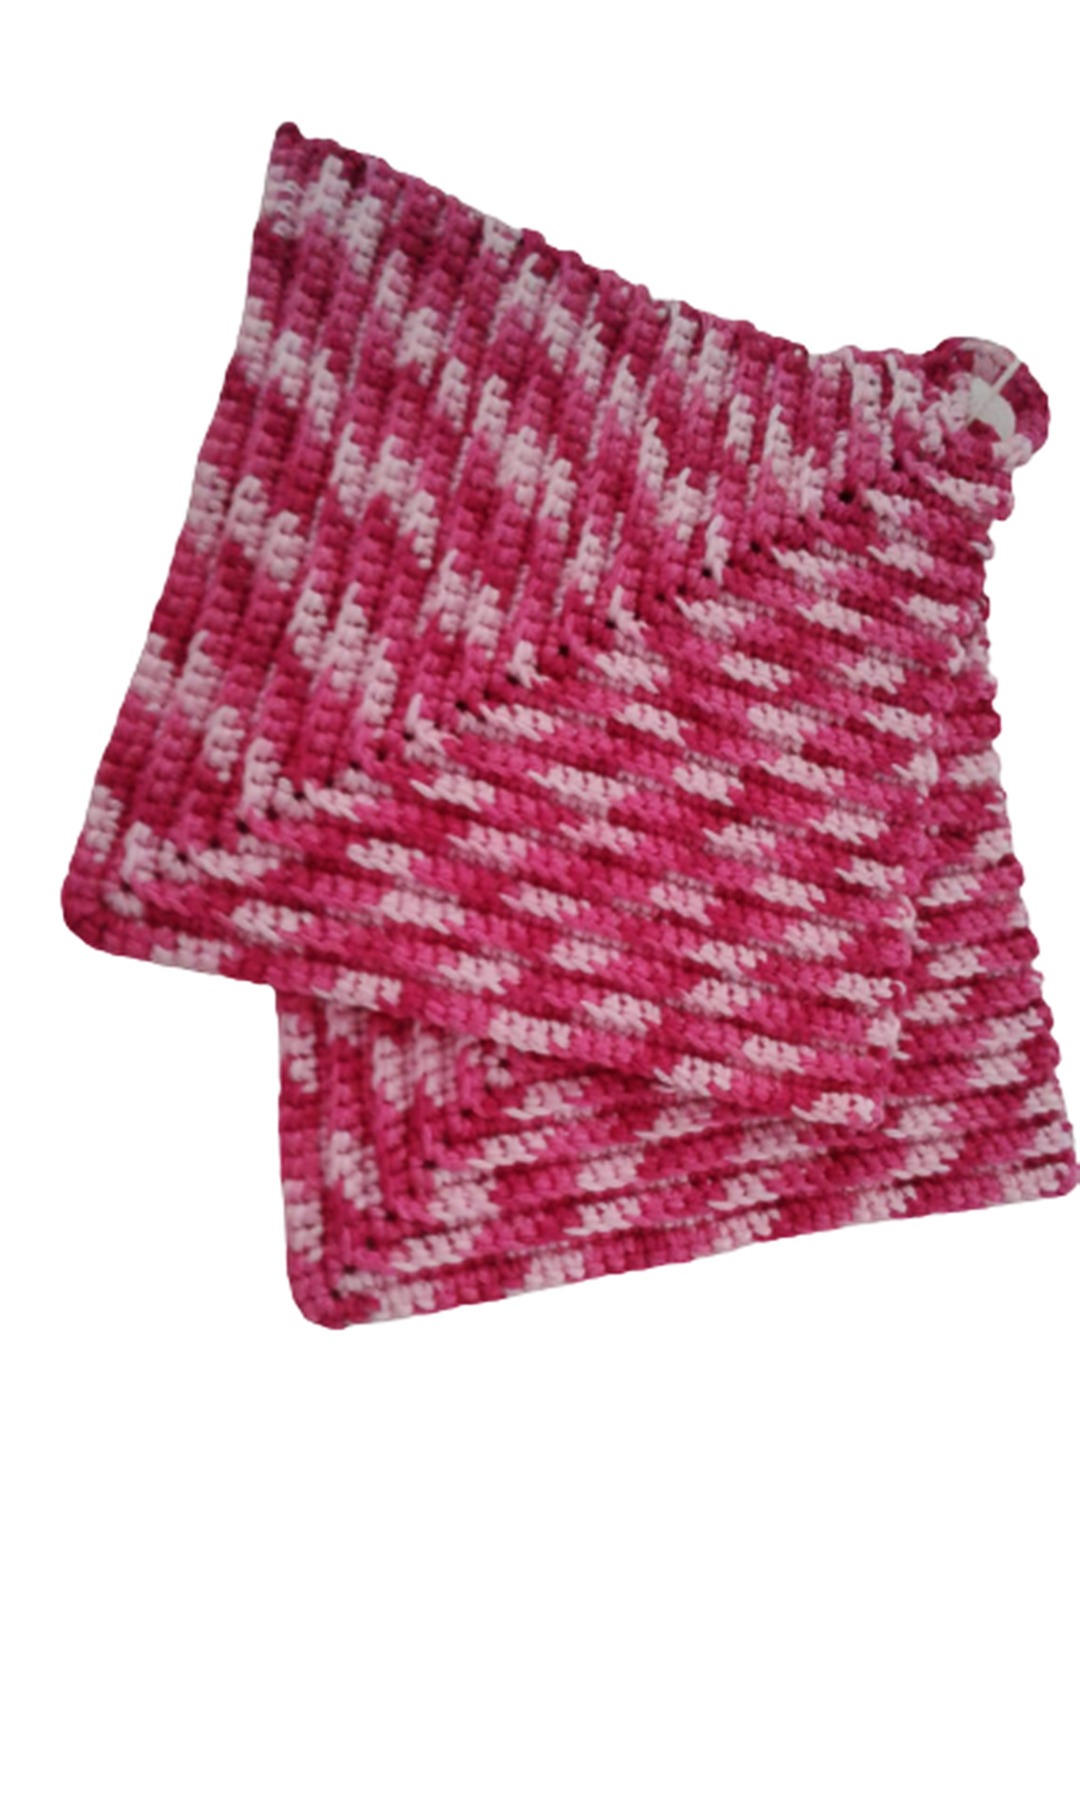 Topflappen klassicher Stil ca 19 x 19 cm - 100 Baumwolle in pink und natur 3